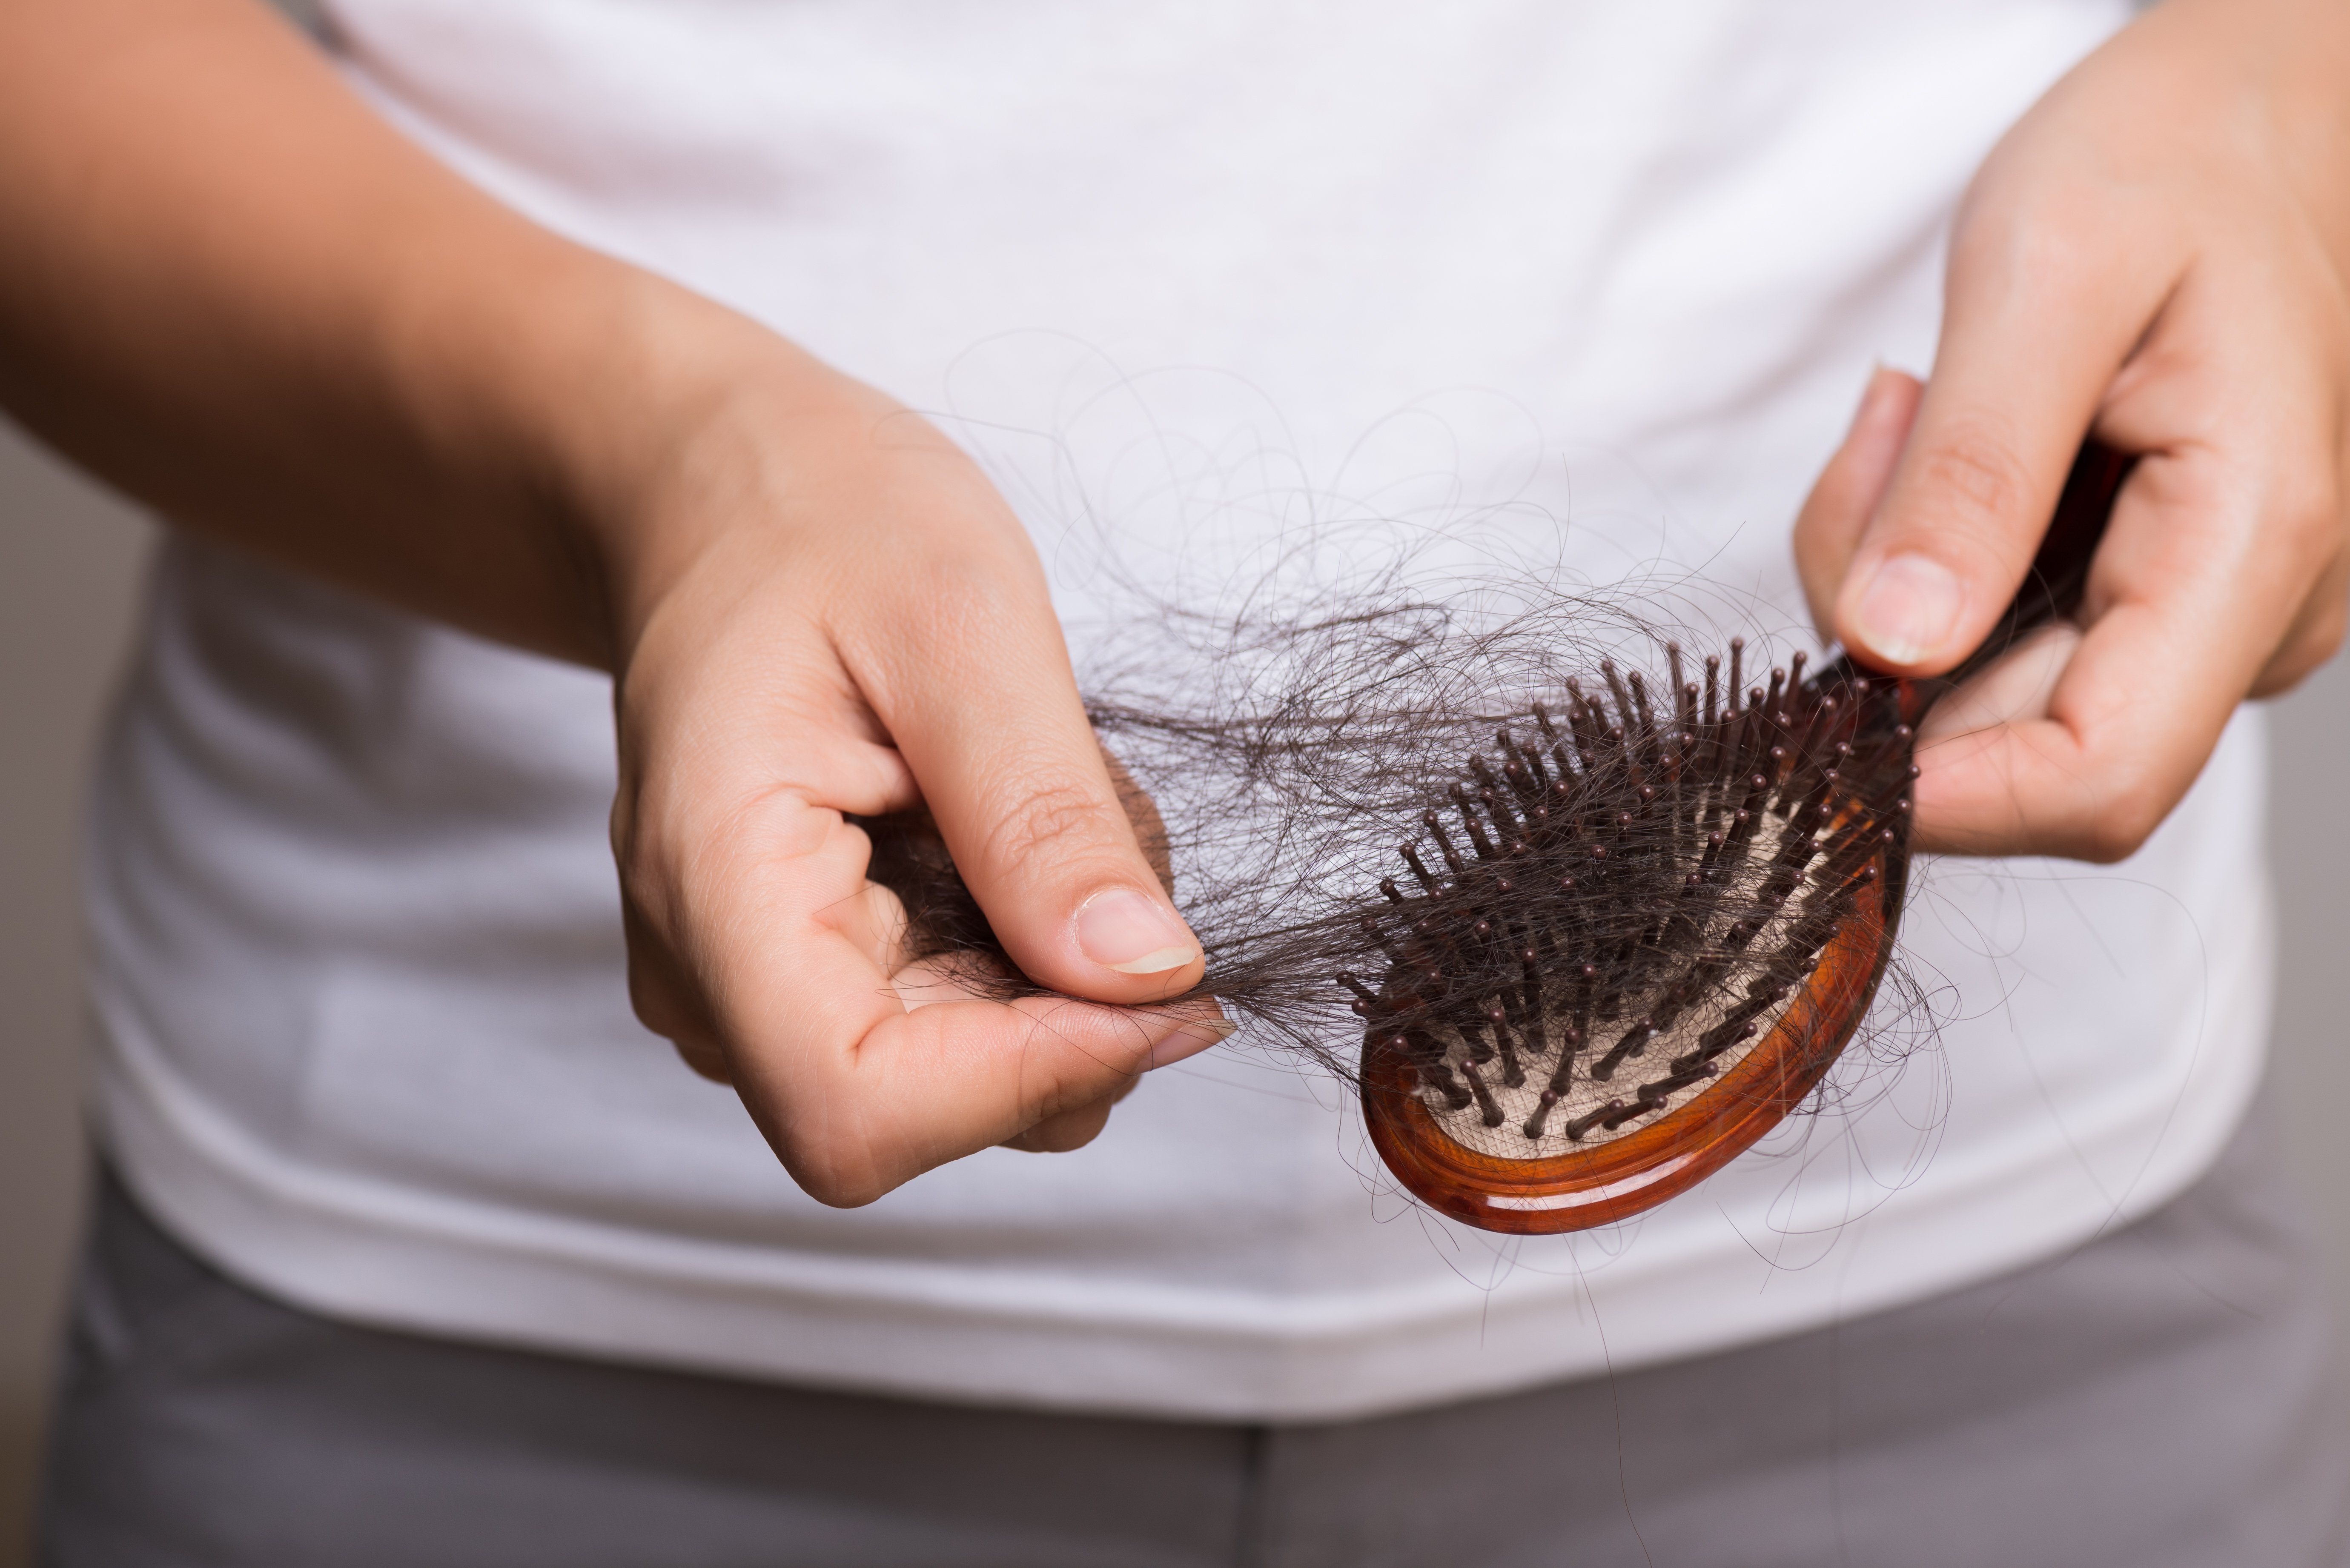 Cepillo con cabello oscuro. Fuente: Shutterstock